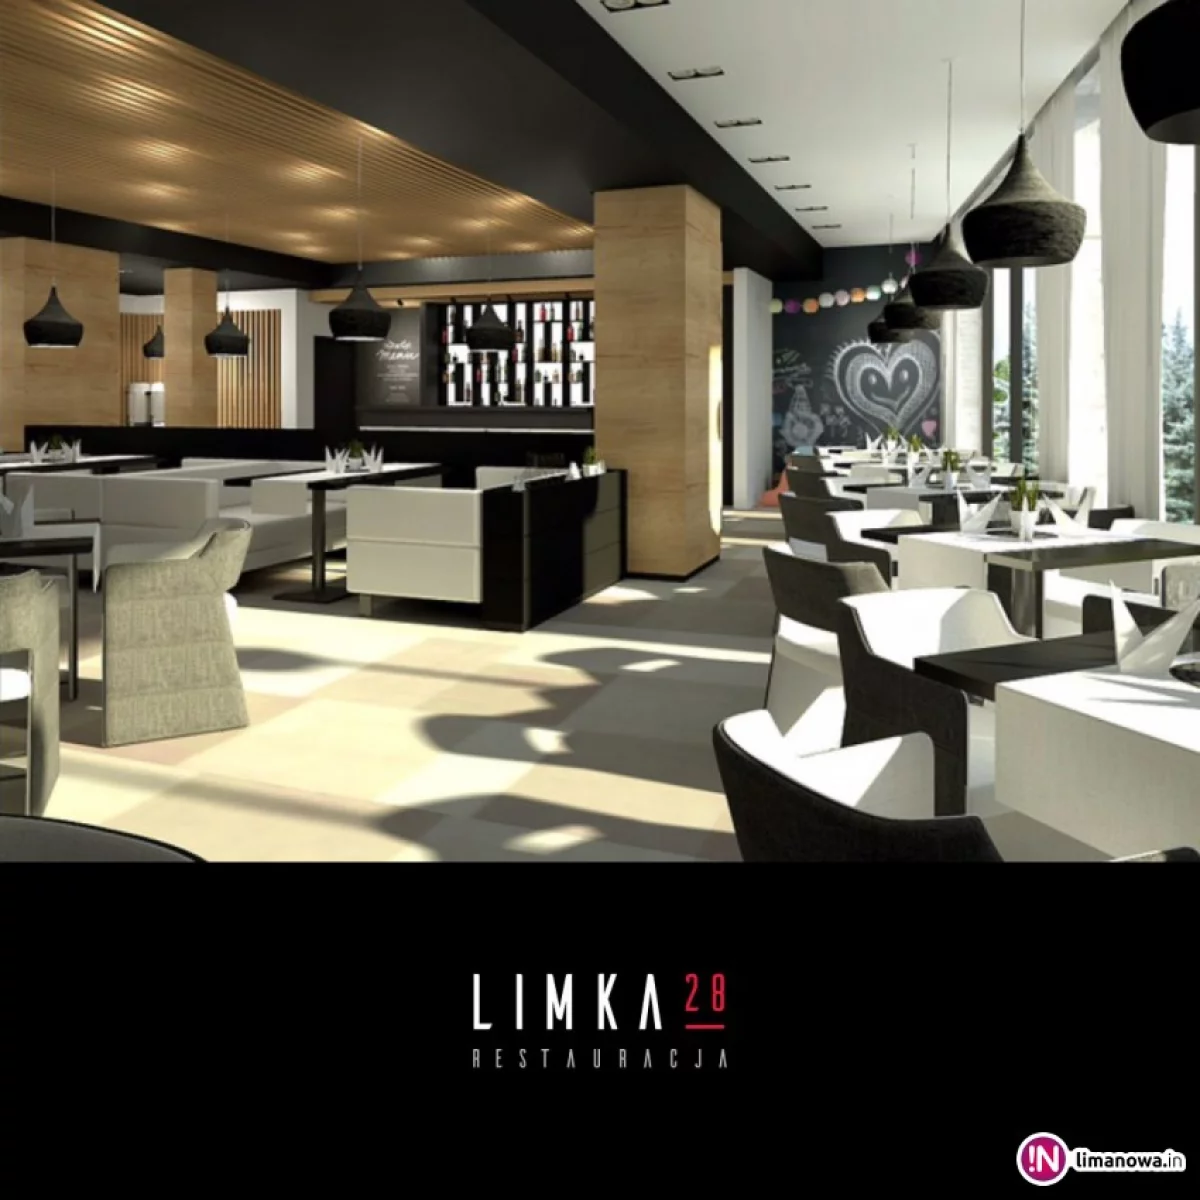 Restauracja LIMKA28 Hotelu Limanova zaprasza już od 16 kwietnia